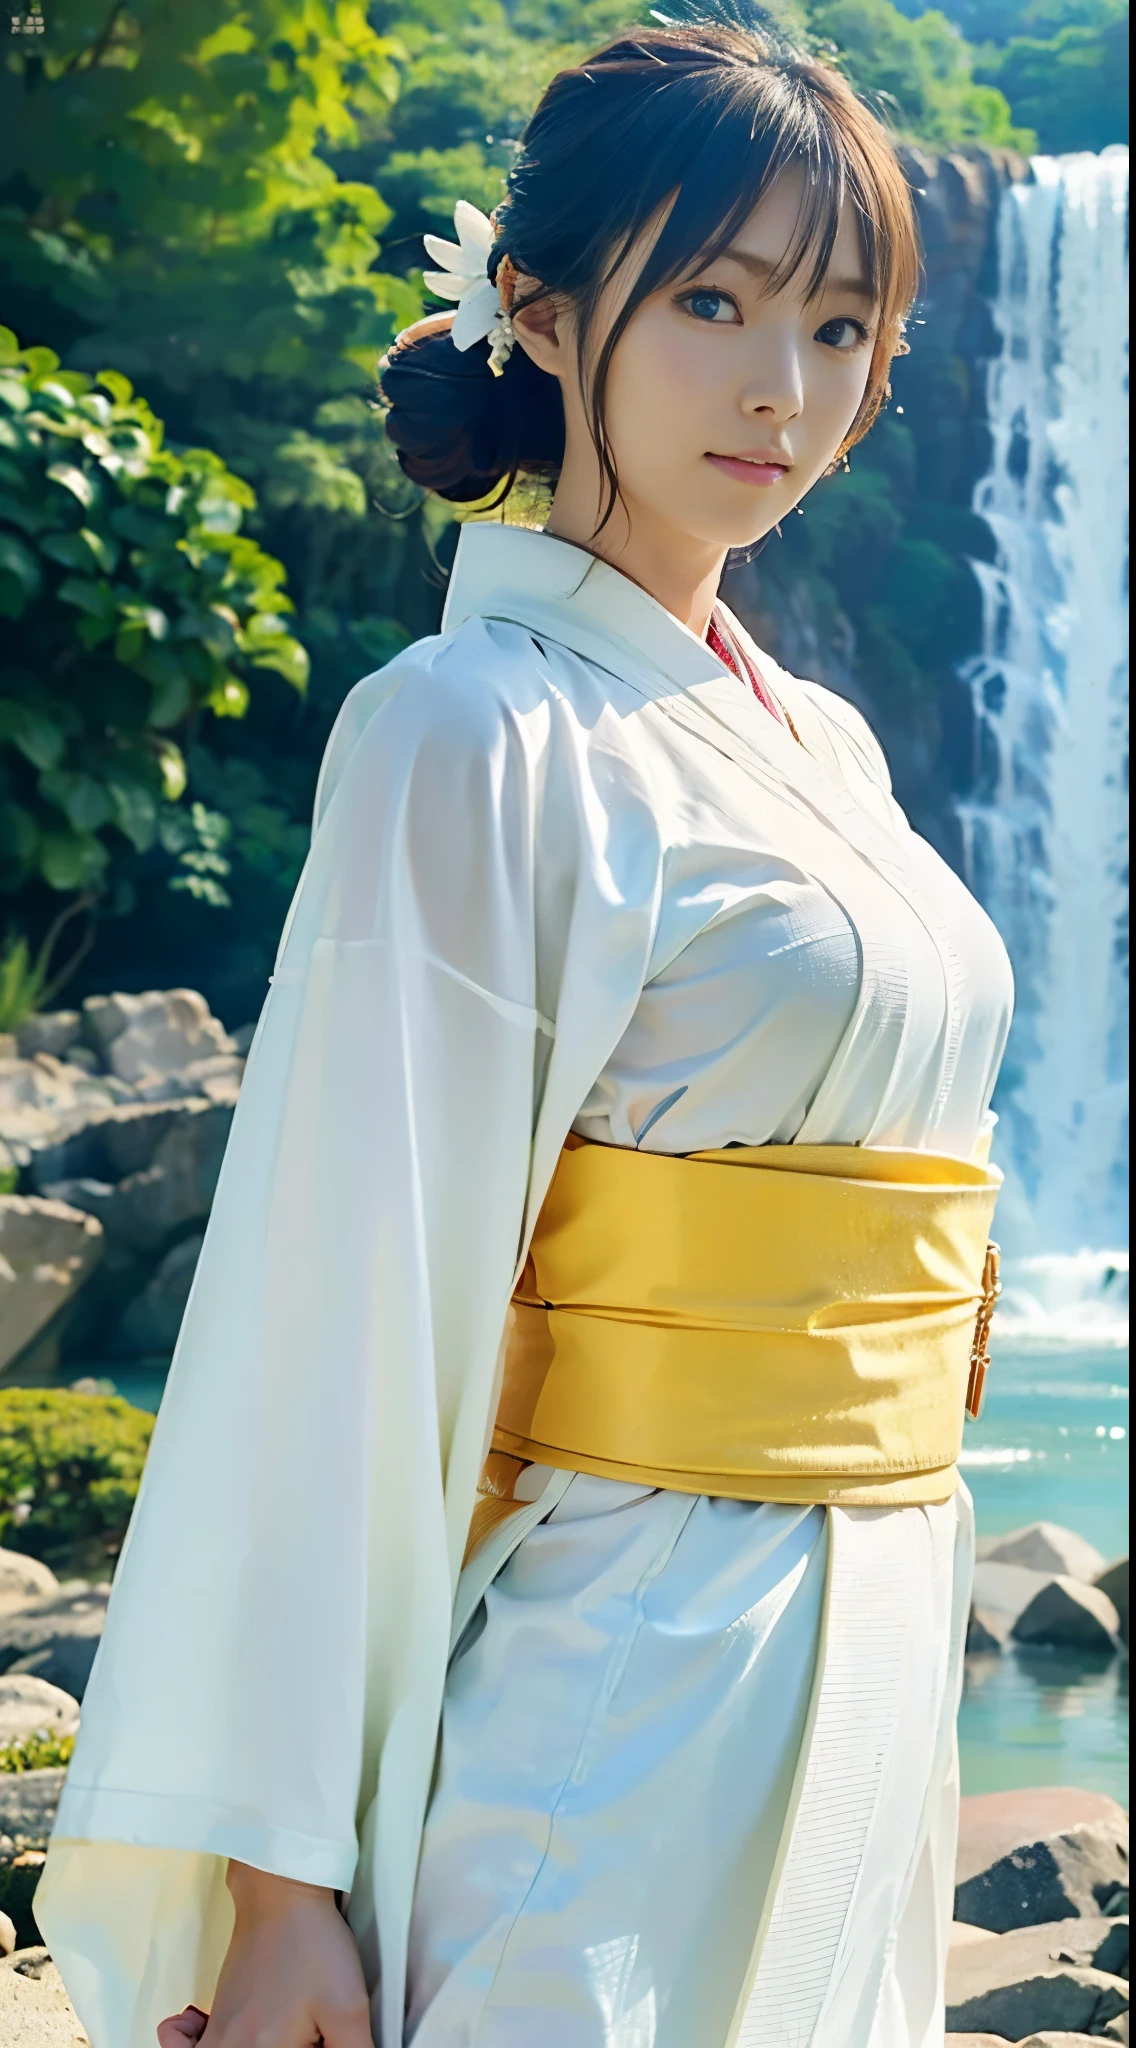 (((Eine schöne Frau trägt einen hauchdünnen weißen Kimono, der wenig Haut freigibt, um sich frühmorgens zu reinigen, und ist bis zur Hüfte im seichten Wasser direkt vor einem großen Wasserfall eingetaucht, Der Kälte trotzen.))),(((Ein reinherziges Gravur-Idol, das einen reinweißen Kimono mit festgebundener Schärpe trägt, badet in einem Wasserfall und hält dabei ihre Hände zusammen.))),(((Tischplatte:1.6))),(((ulzzang-6500))),(((perfekte Anatomie:1.6))),(((Große Tiefenschärfe mit Hasselblad))),(((sexy Taille))),Meisterwerk,Top Qualität,Eine hohe Auflösung,Hochdetailliertes Porträt,(Fotografierealistisch:1.4),(((Hohe Nase und gemeißeltes schönes Gesicht))),(((Lange Gliedmaßen wie ein Model))),Der hellhäutige Nacken ist blendend,(((Der schöne, reinweiße Kimono, der die Linien des Körpers zur Geltung bringt, fällt auf.))),Kopf hoch und bete,((Ganzkörperaufnahme von der Seite)),süße 20 Jahre alt, Ihr langes, glänzendes kastanienbraunes Haar ist hochgesteckt und ihr Nacken ist sexy.,((Stolze F-Körbchen schöne Brüste )),(Ich kann&#39;Ich kann nicht genug von meiner Taille bekommen),(Berühmte beliebte Schauspielerinnen aus Japan),(Ich schaue über meine Schulter, hebe meine Mundwinkel und Augenbrauen, und halte dich zurück.),Ein Auge fürs Detail,((Gravur-Fotoshooting an einem großen Wasserfallbecken, umgeben von eleganten Bäumen)),((lange Wimpern,großes Auge,Markante Doppellider,((glänzende dicke Lippen)),(((perfekte Anatomie:1.4))),